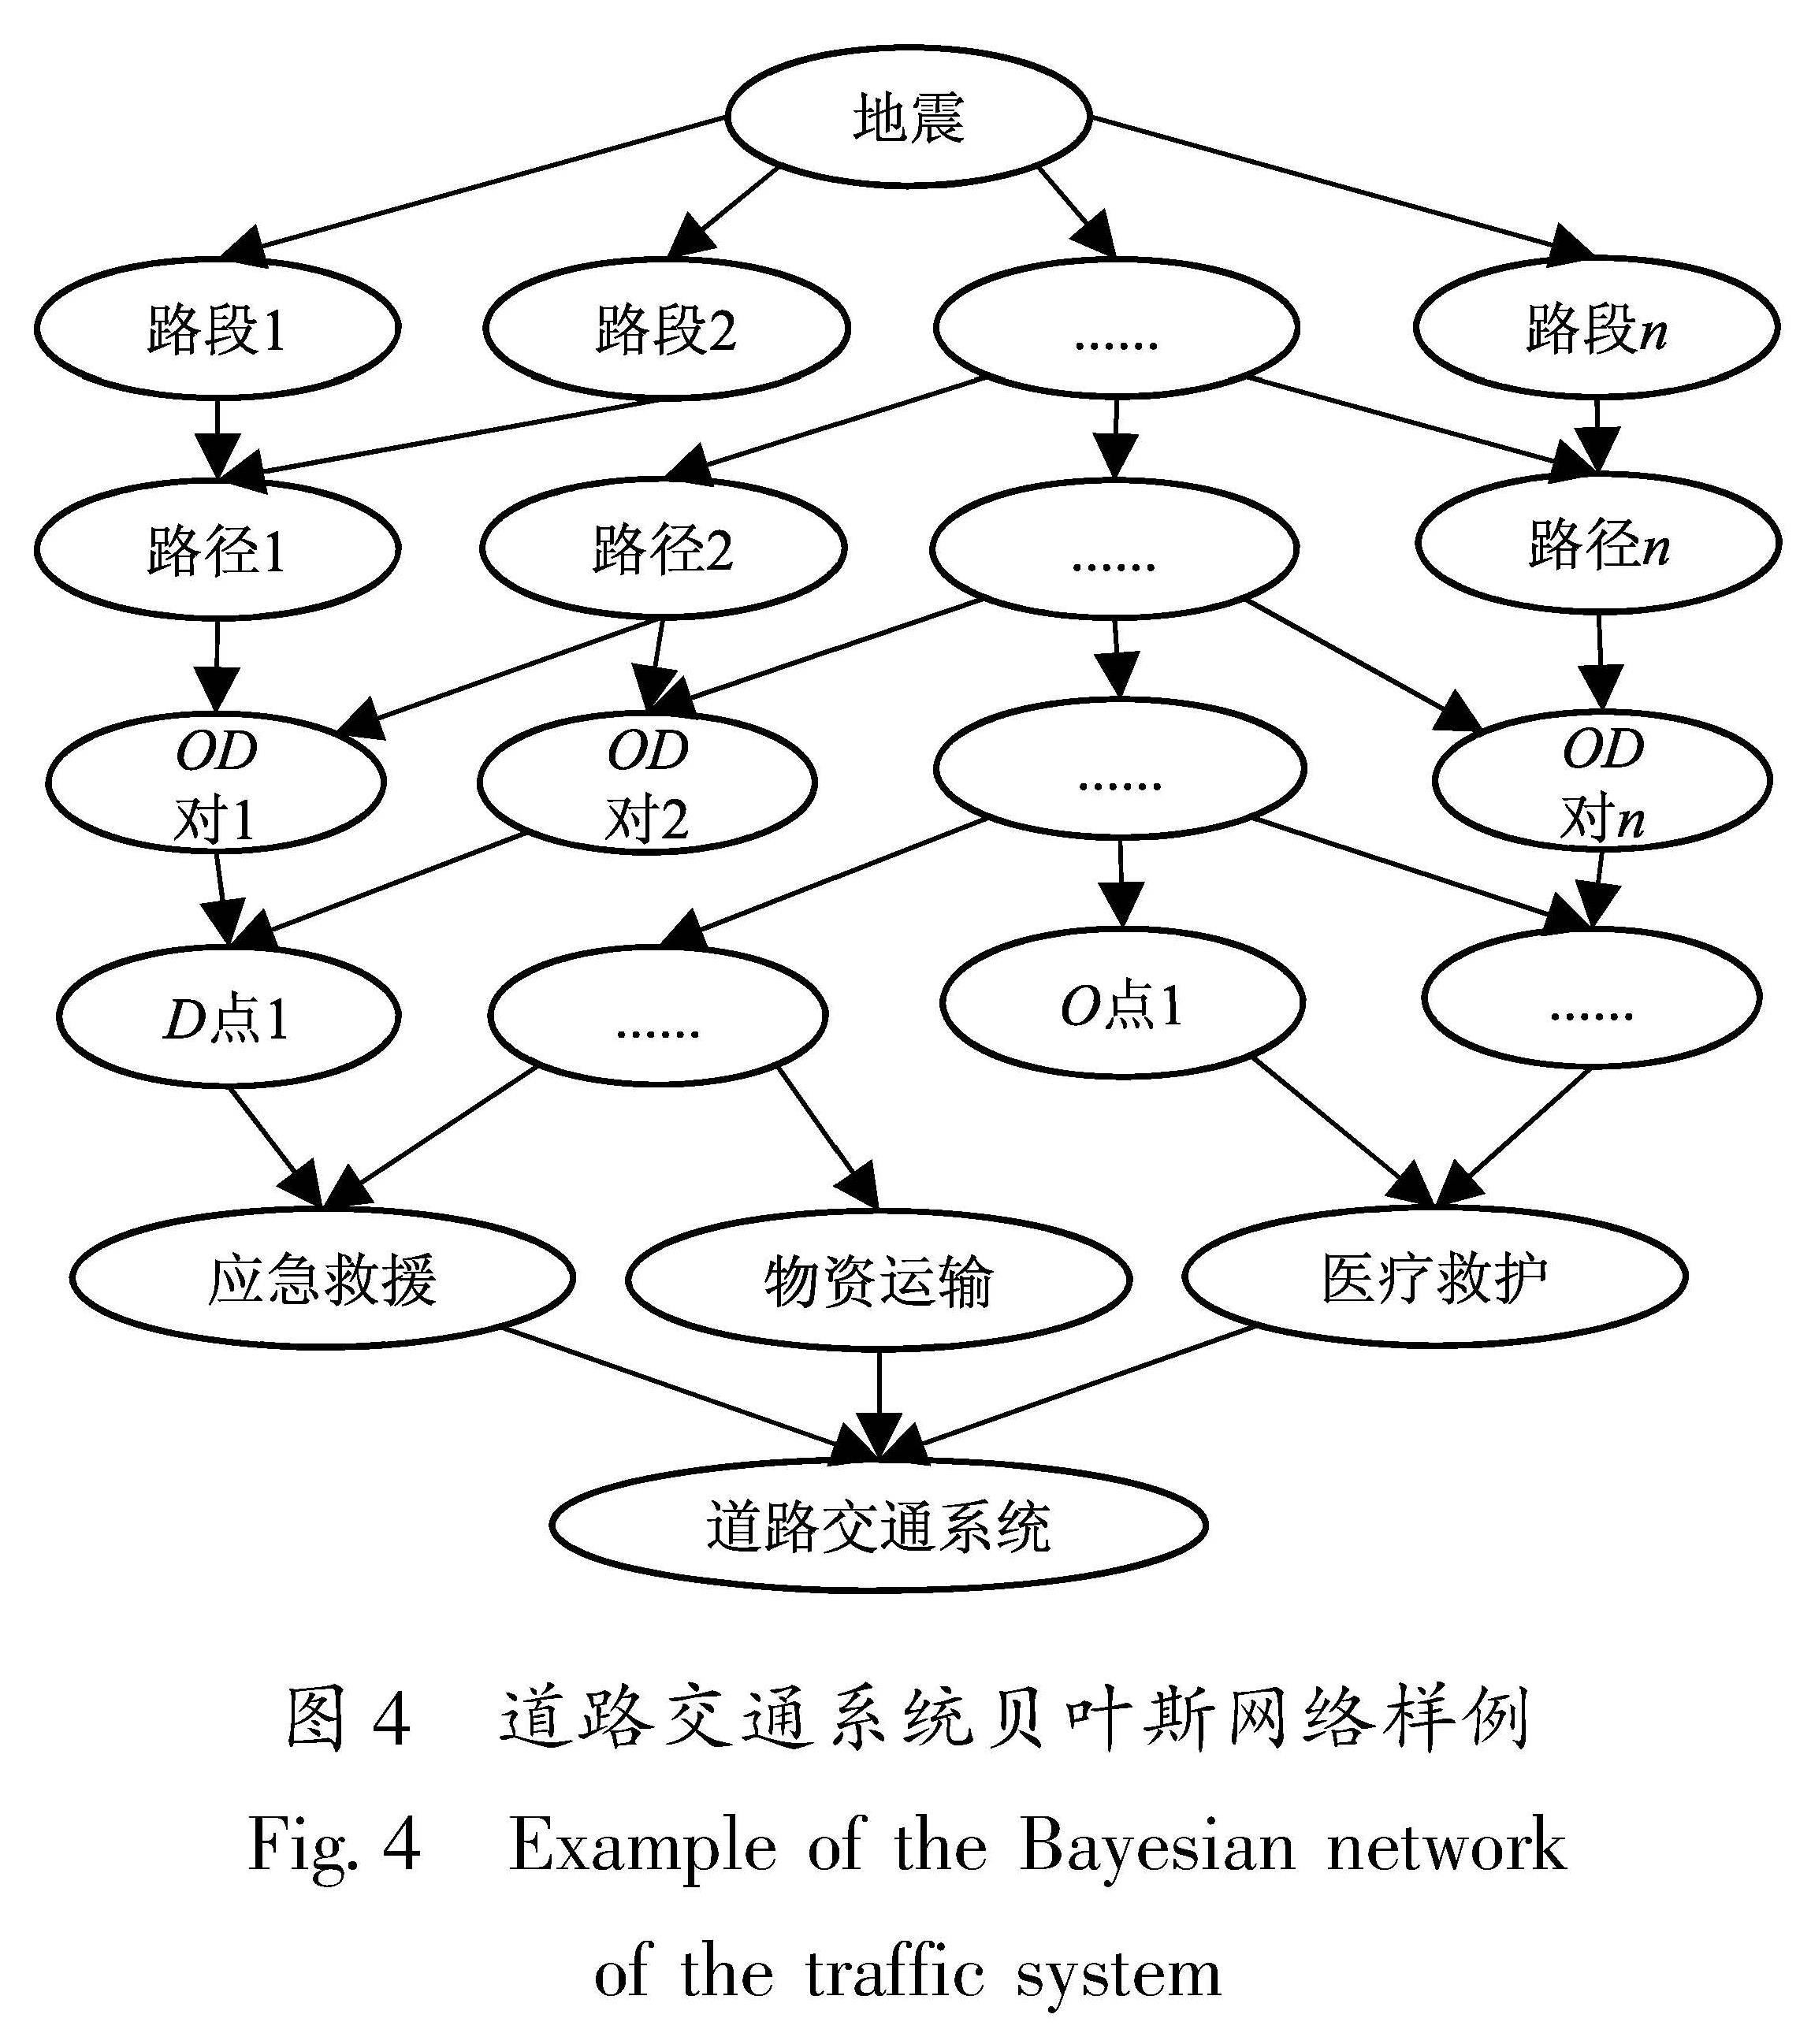 图4 道路交通系统贝叶斯网络样例<br/>Fig.4 Example of the Bayesian network of the traffic system